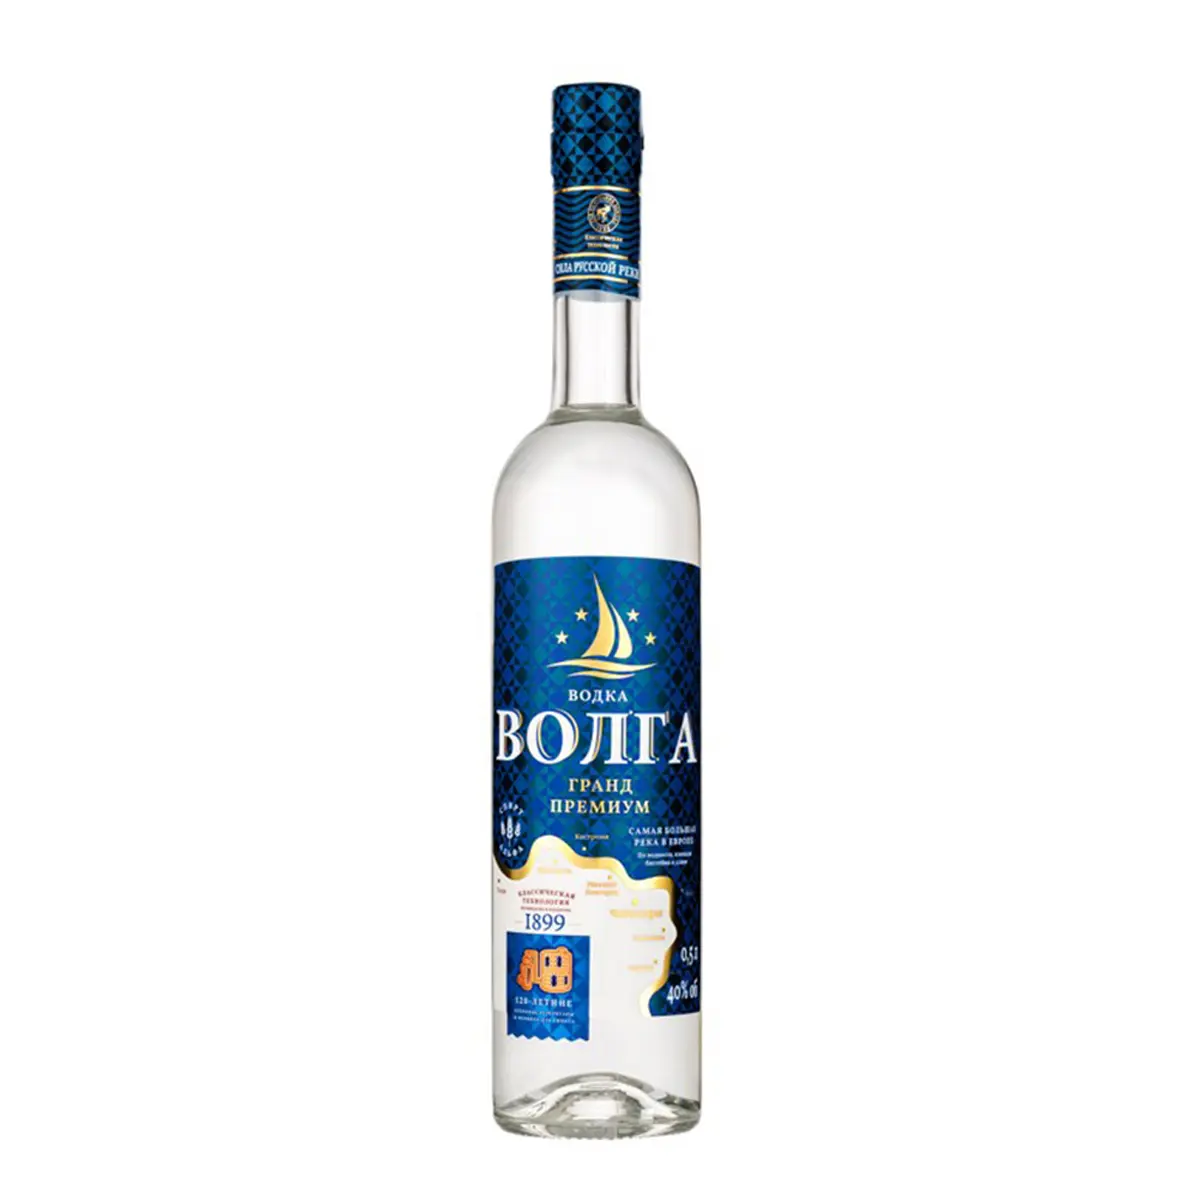 Vodka "Volga Grand" Premium 40 % bottle 0.5 L